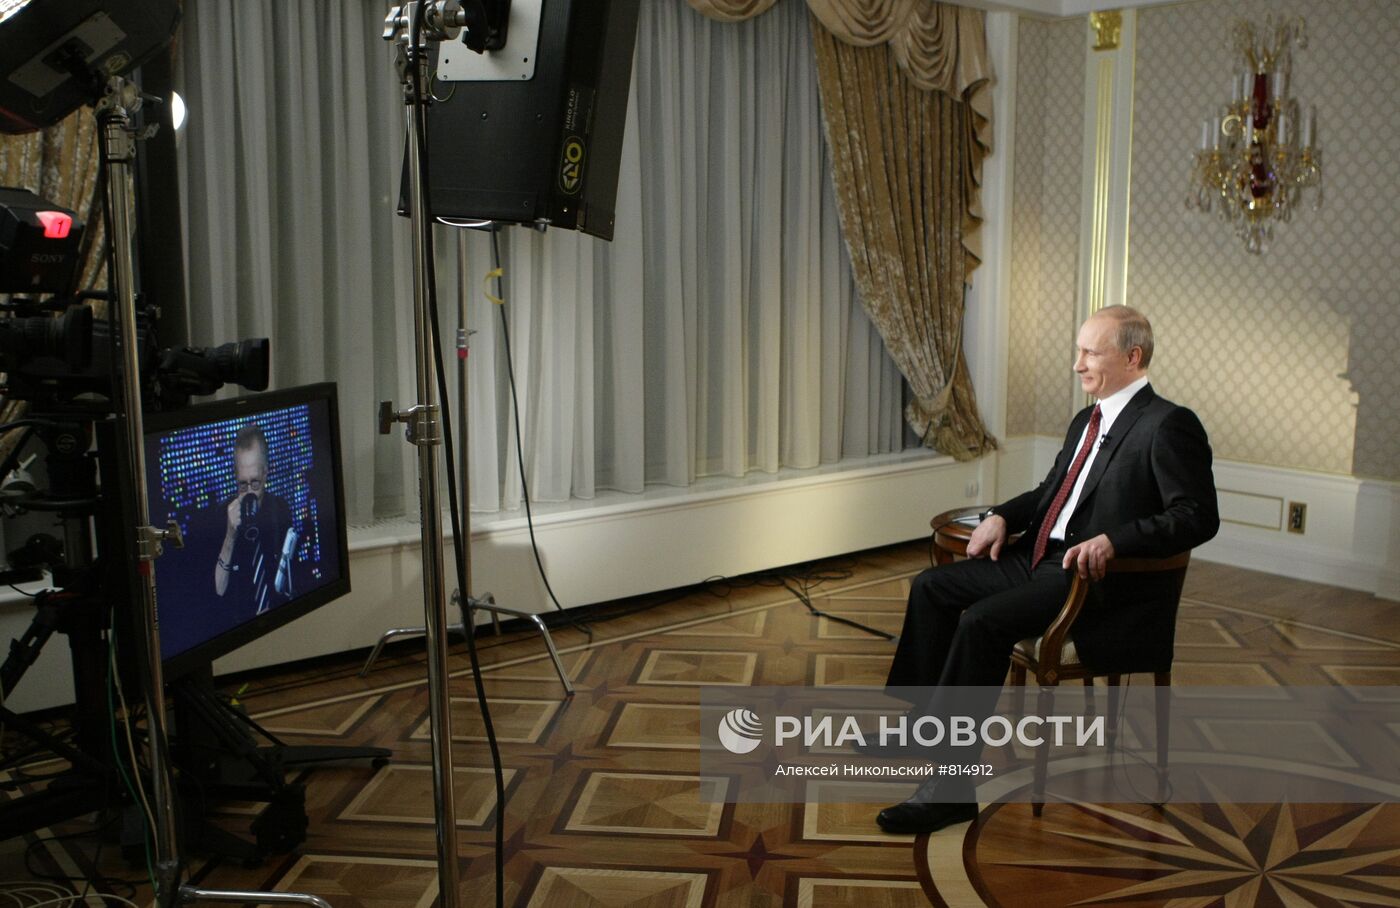 Владимир Путин дал интервью телекомпании CNN